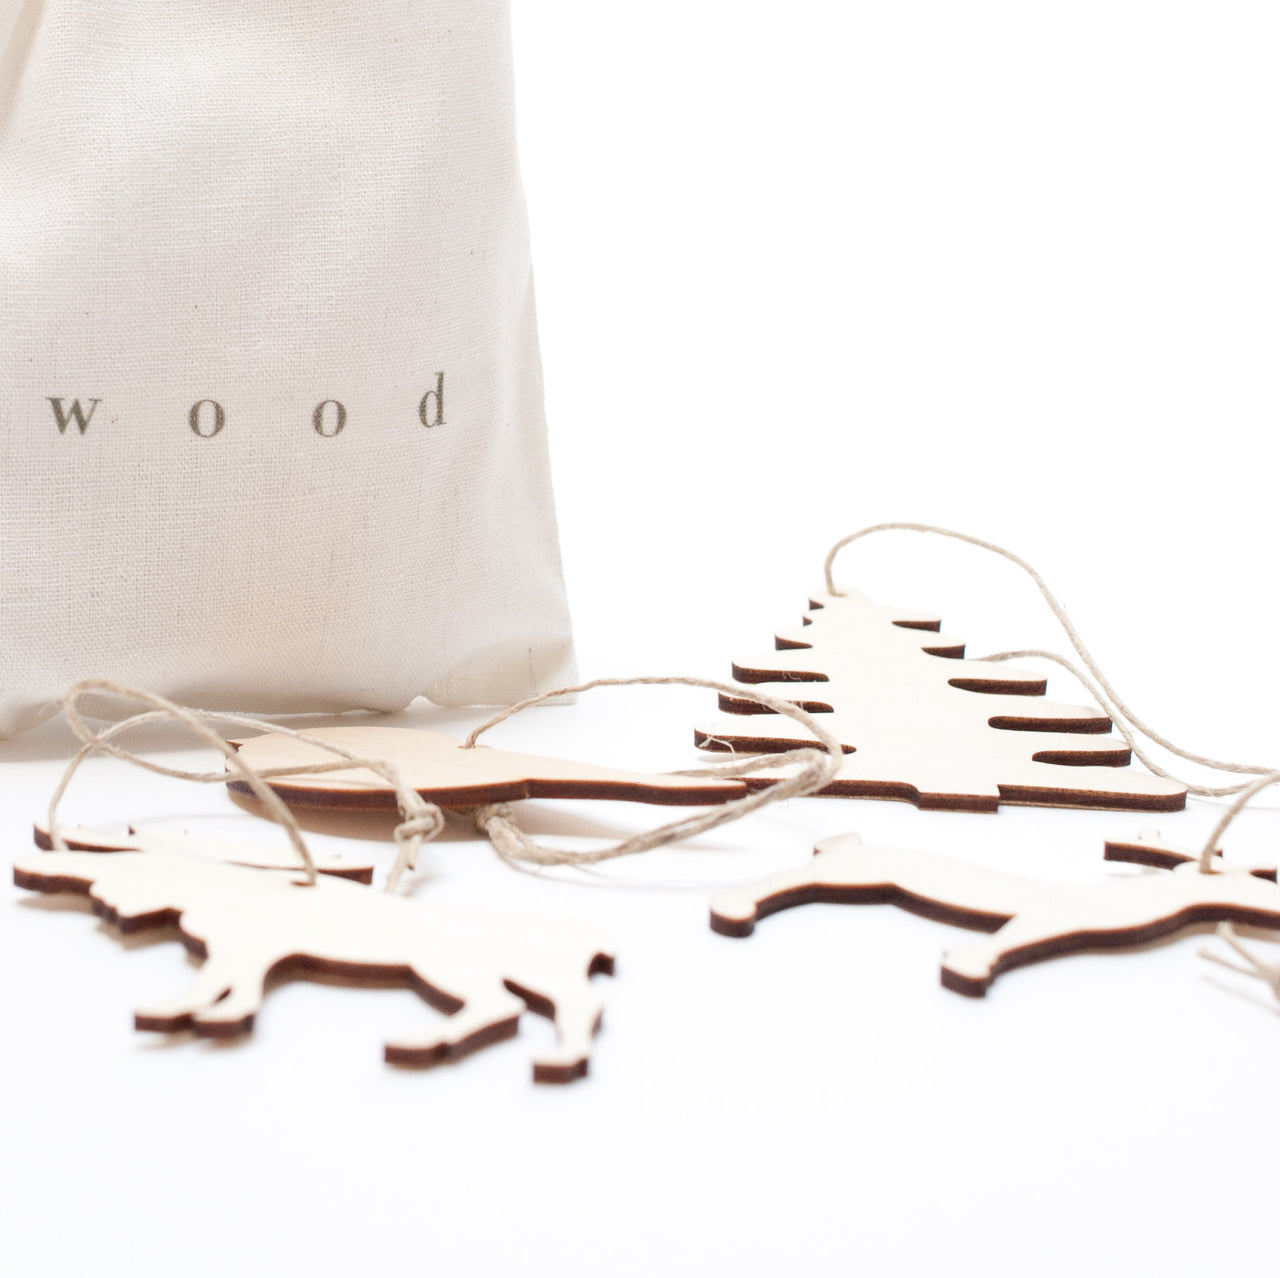 bag of wooden ornaments